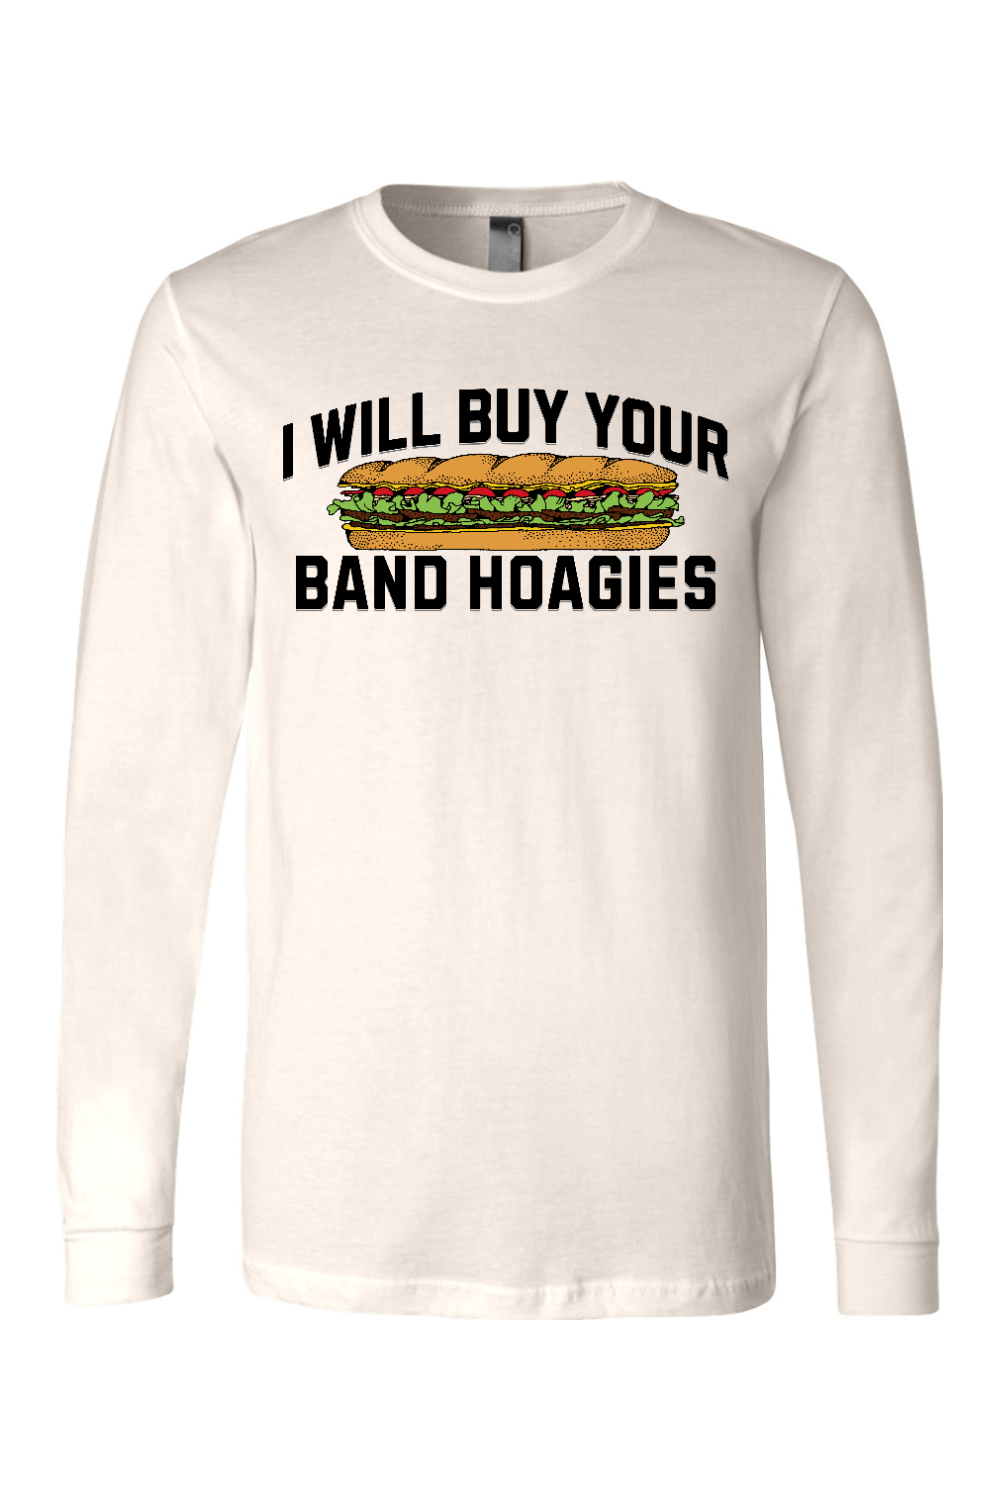 I Buy Band Hoagies - Long Sleeve Tee - Yinzylvania